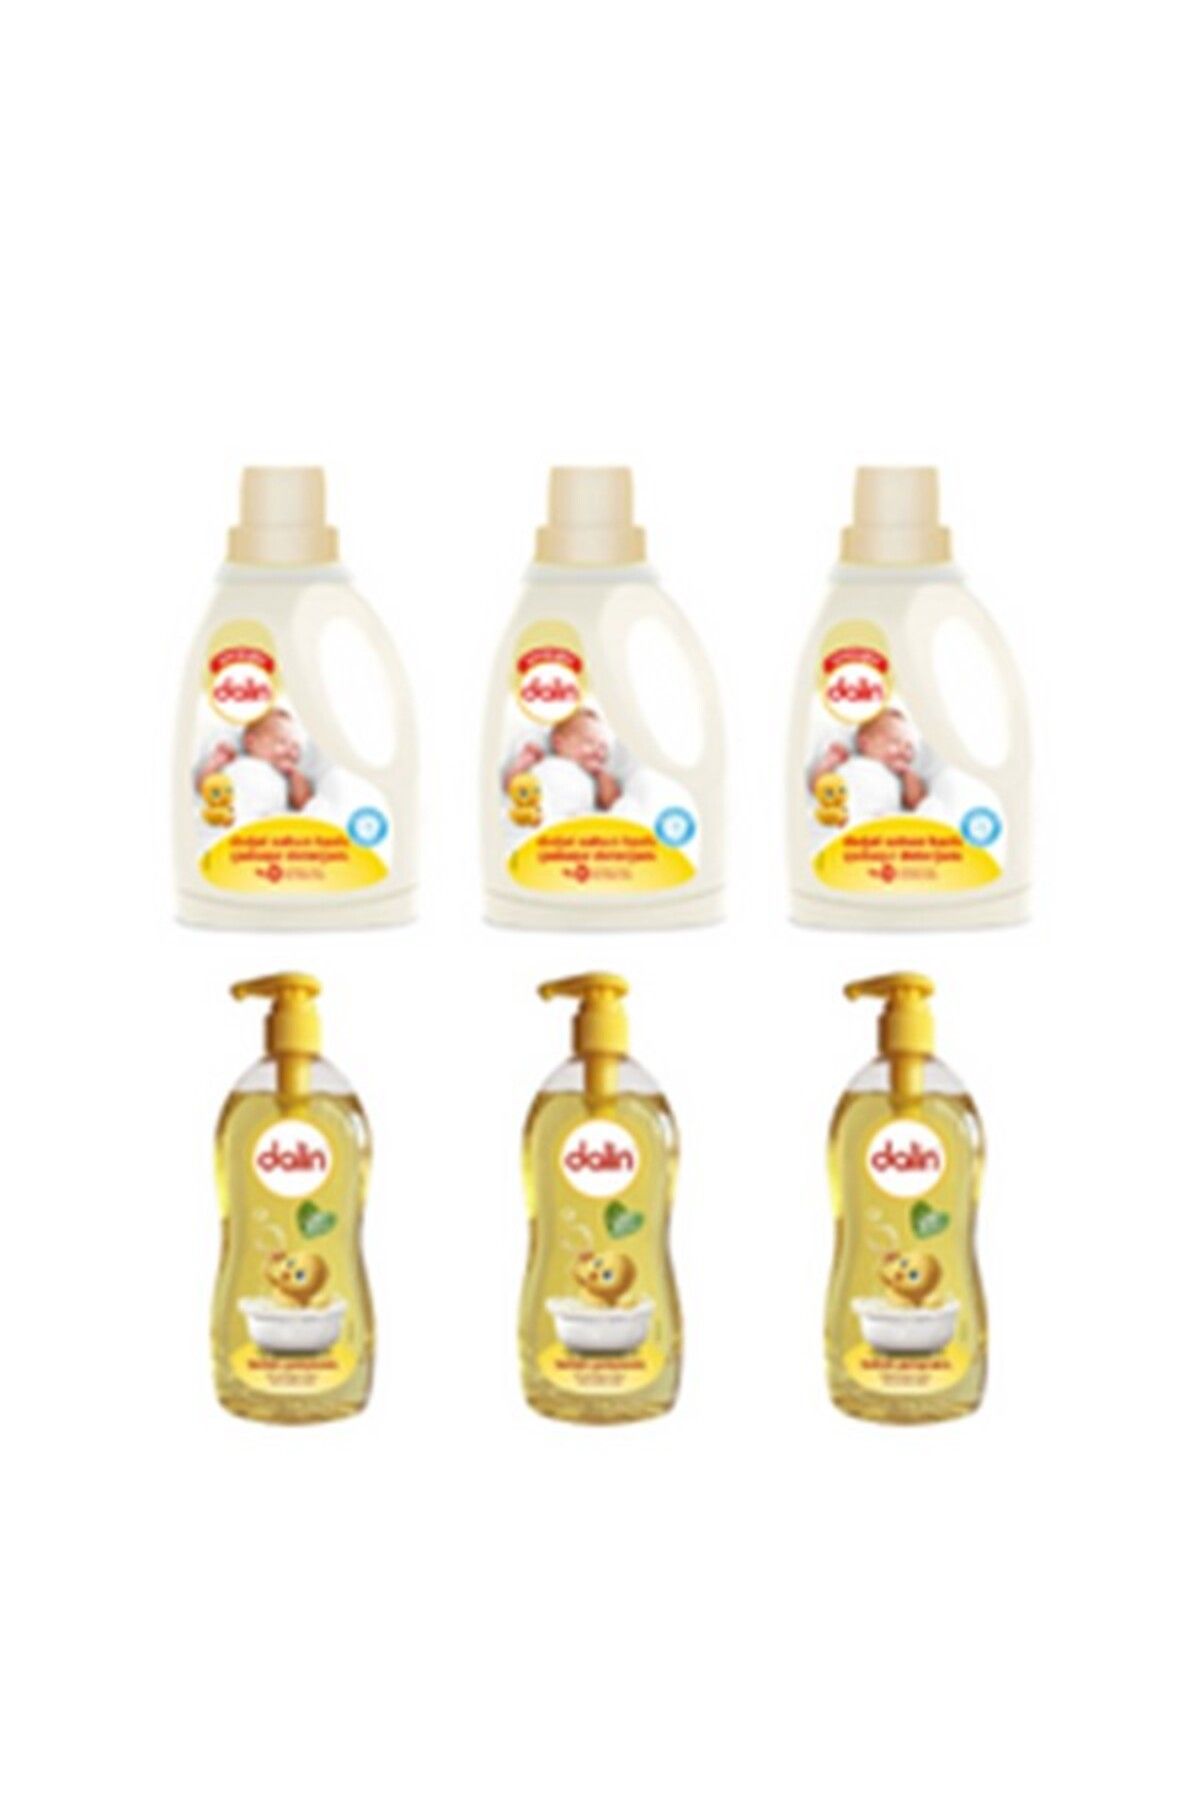 Dalin Doğal Sabun Sıvı Bebek Çamaşır Deterjanı 1500 ml 3 Adet + Bebek Şampuanı Klasik 700 ml 3 Adet